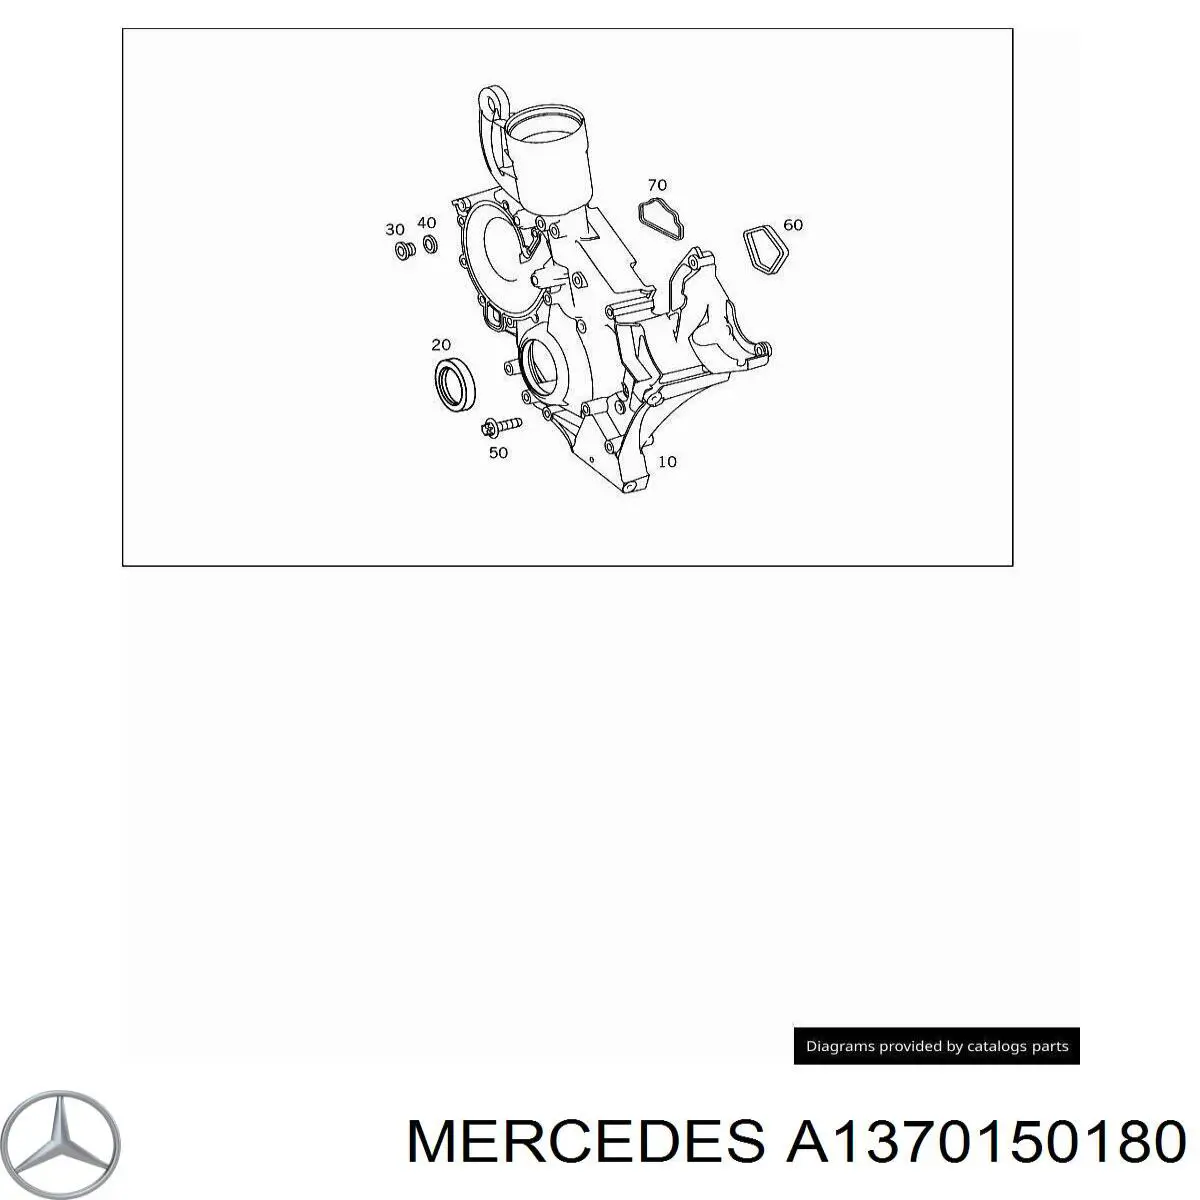 A1370150180 Mercedes прокладка передней крышки двигателя верхняя